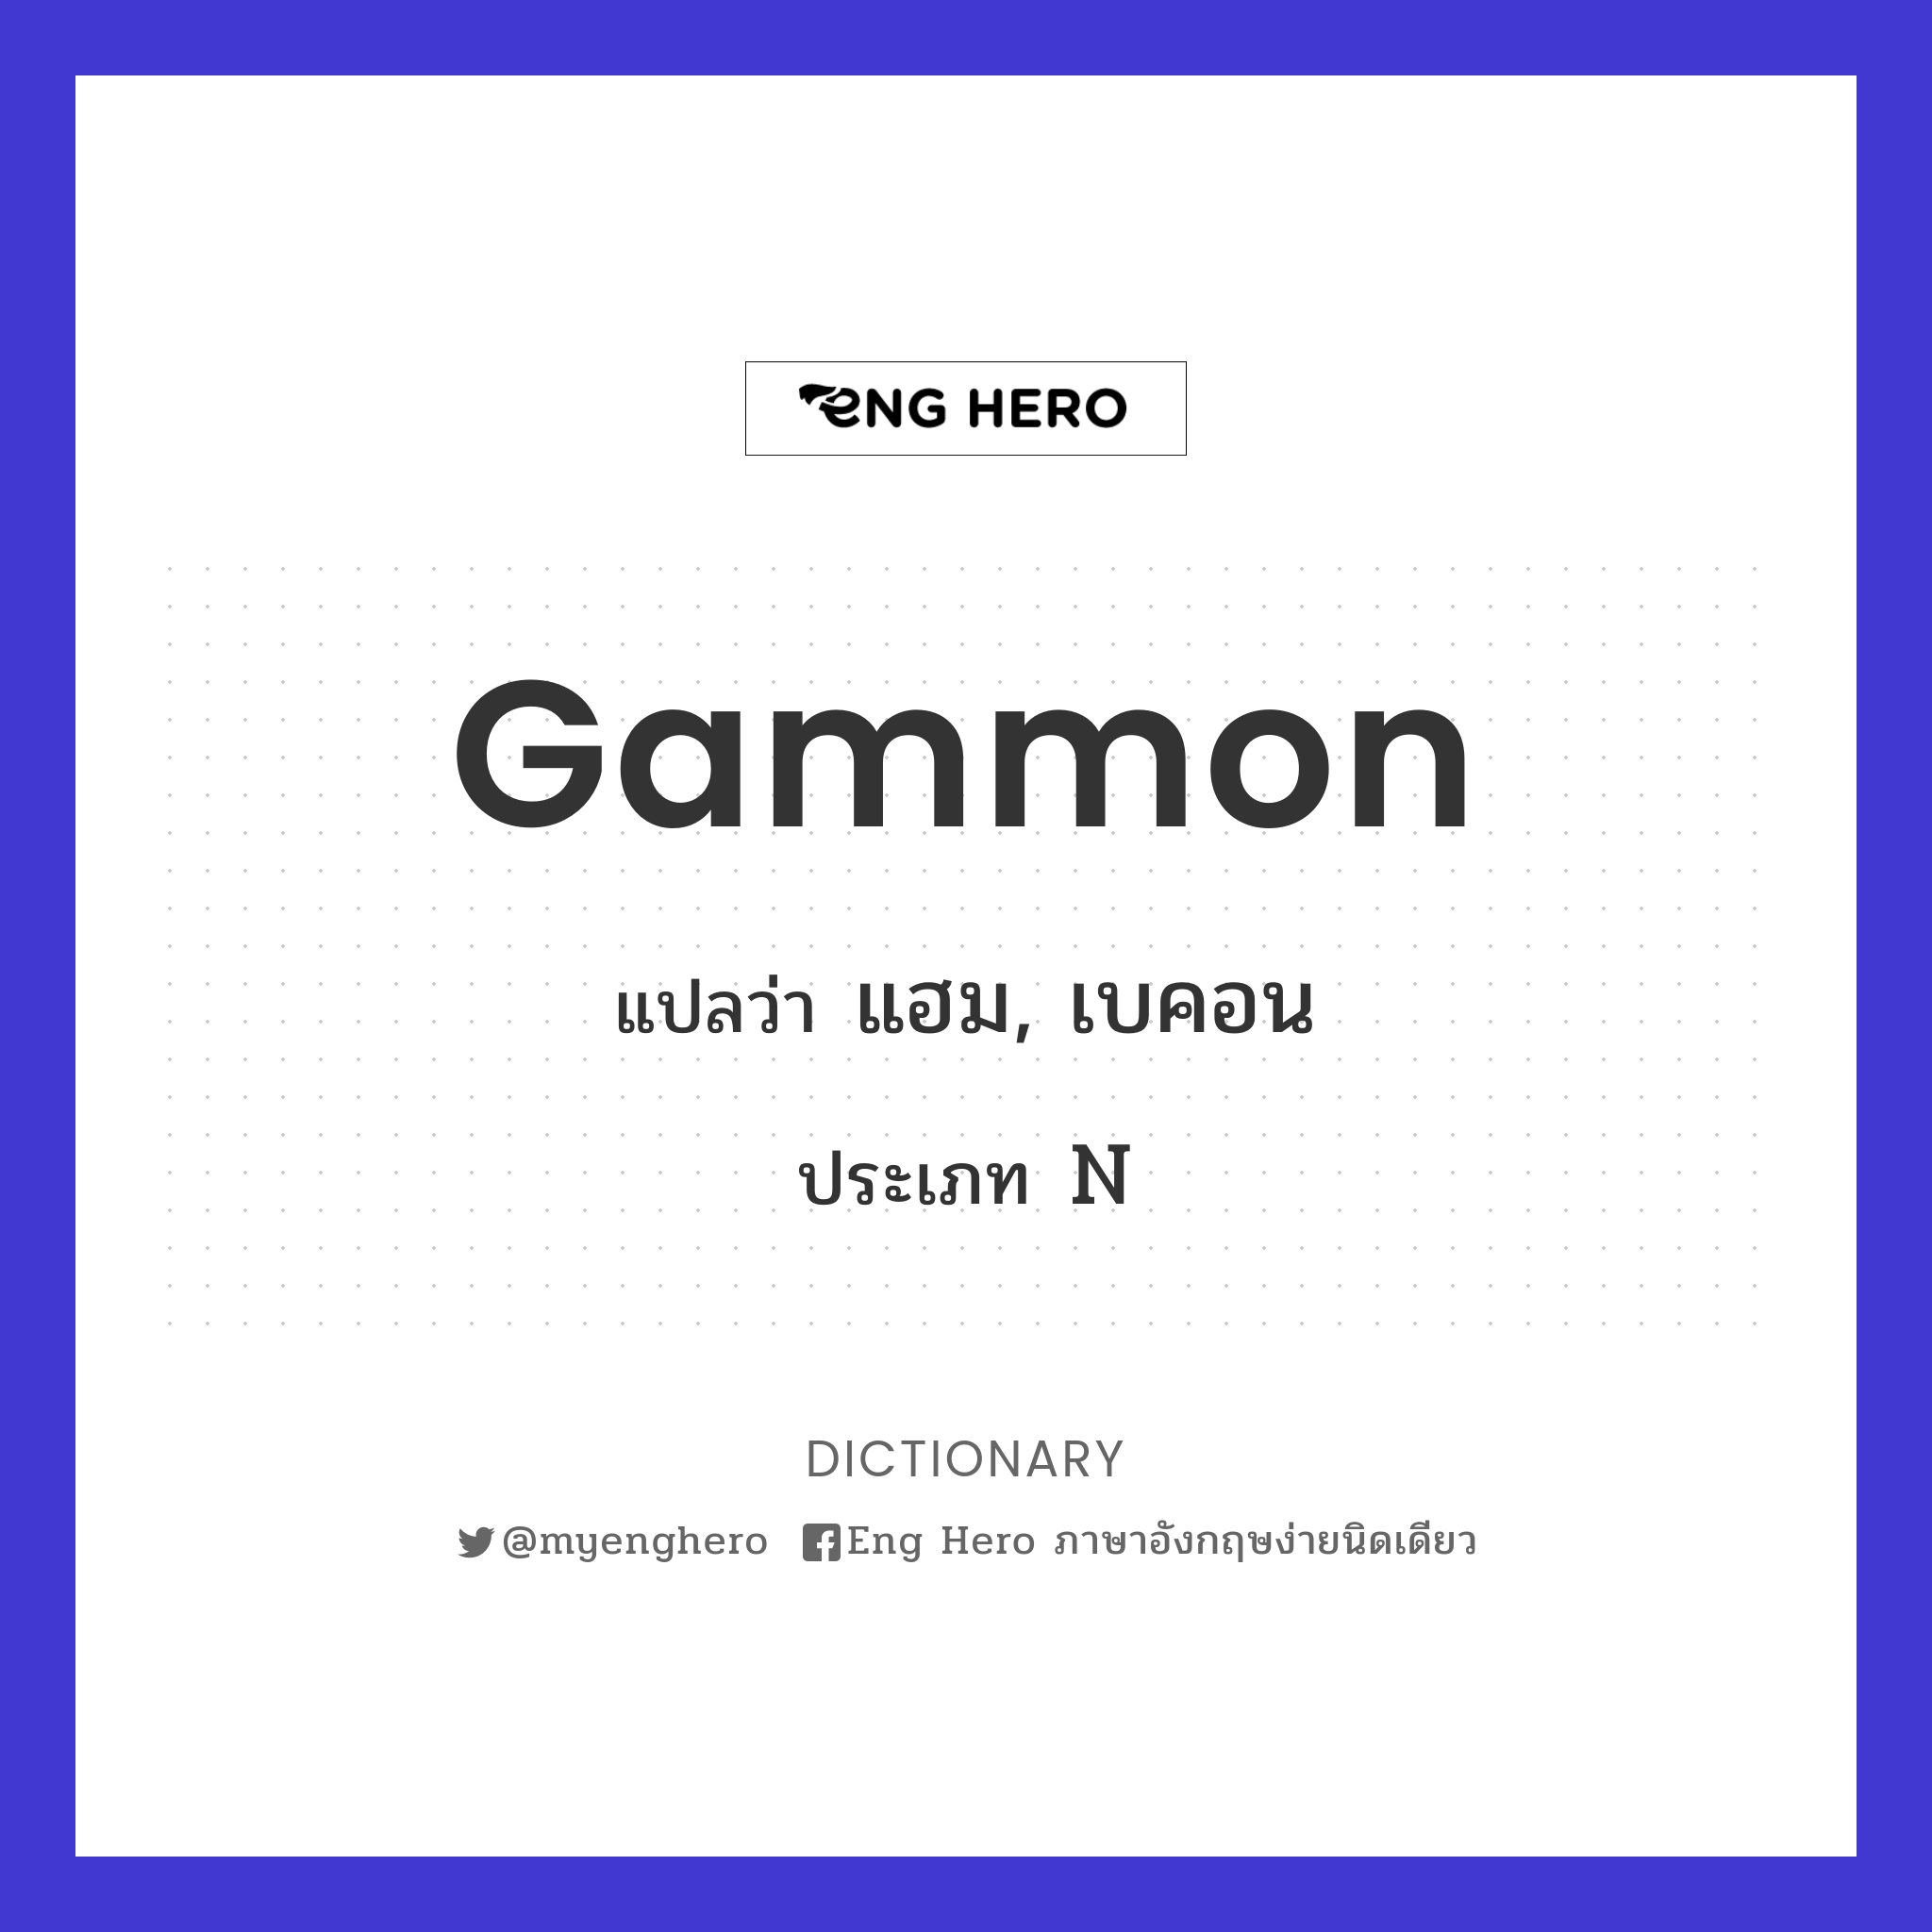 Gammon แปลว่า แฮม, เบคอน | Eng Hero เรียนภาษาอังกฤษ ออนไลน์ ฟรี